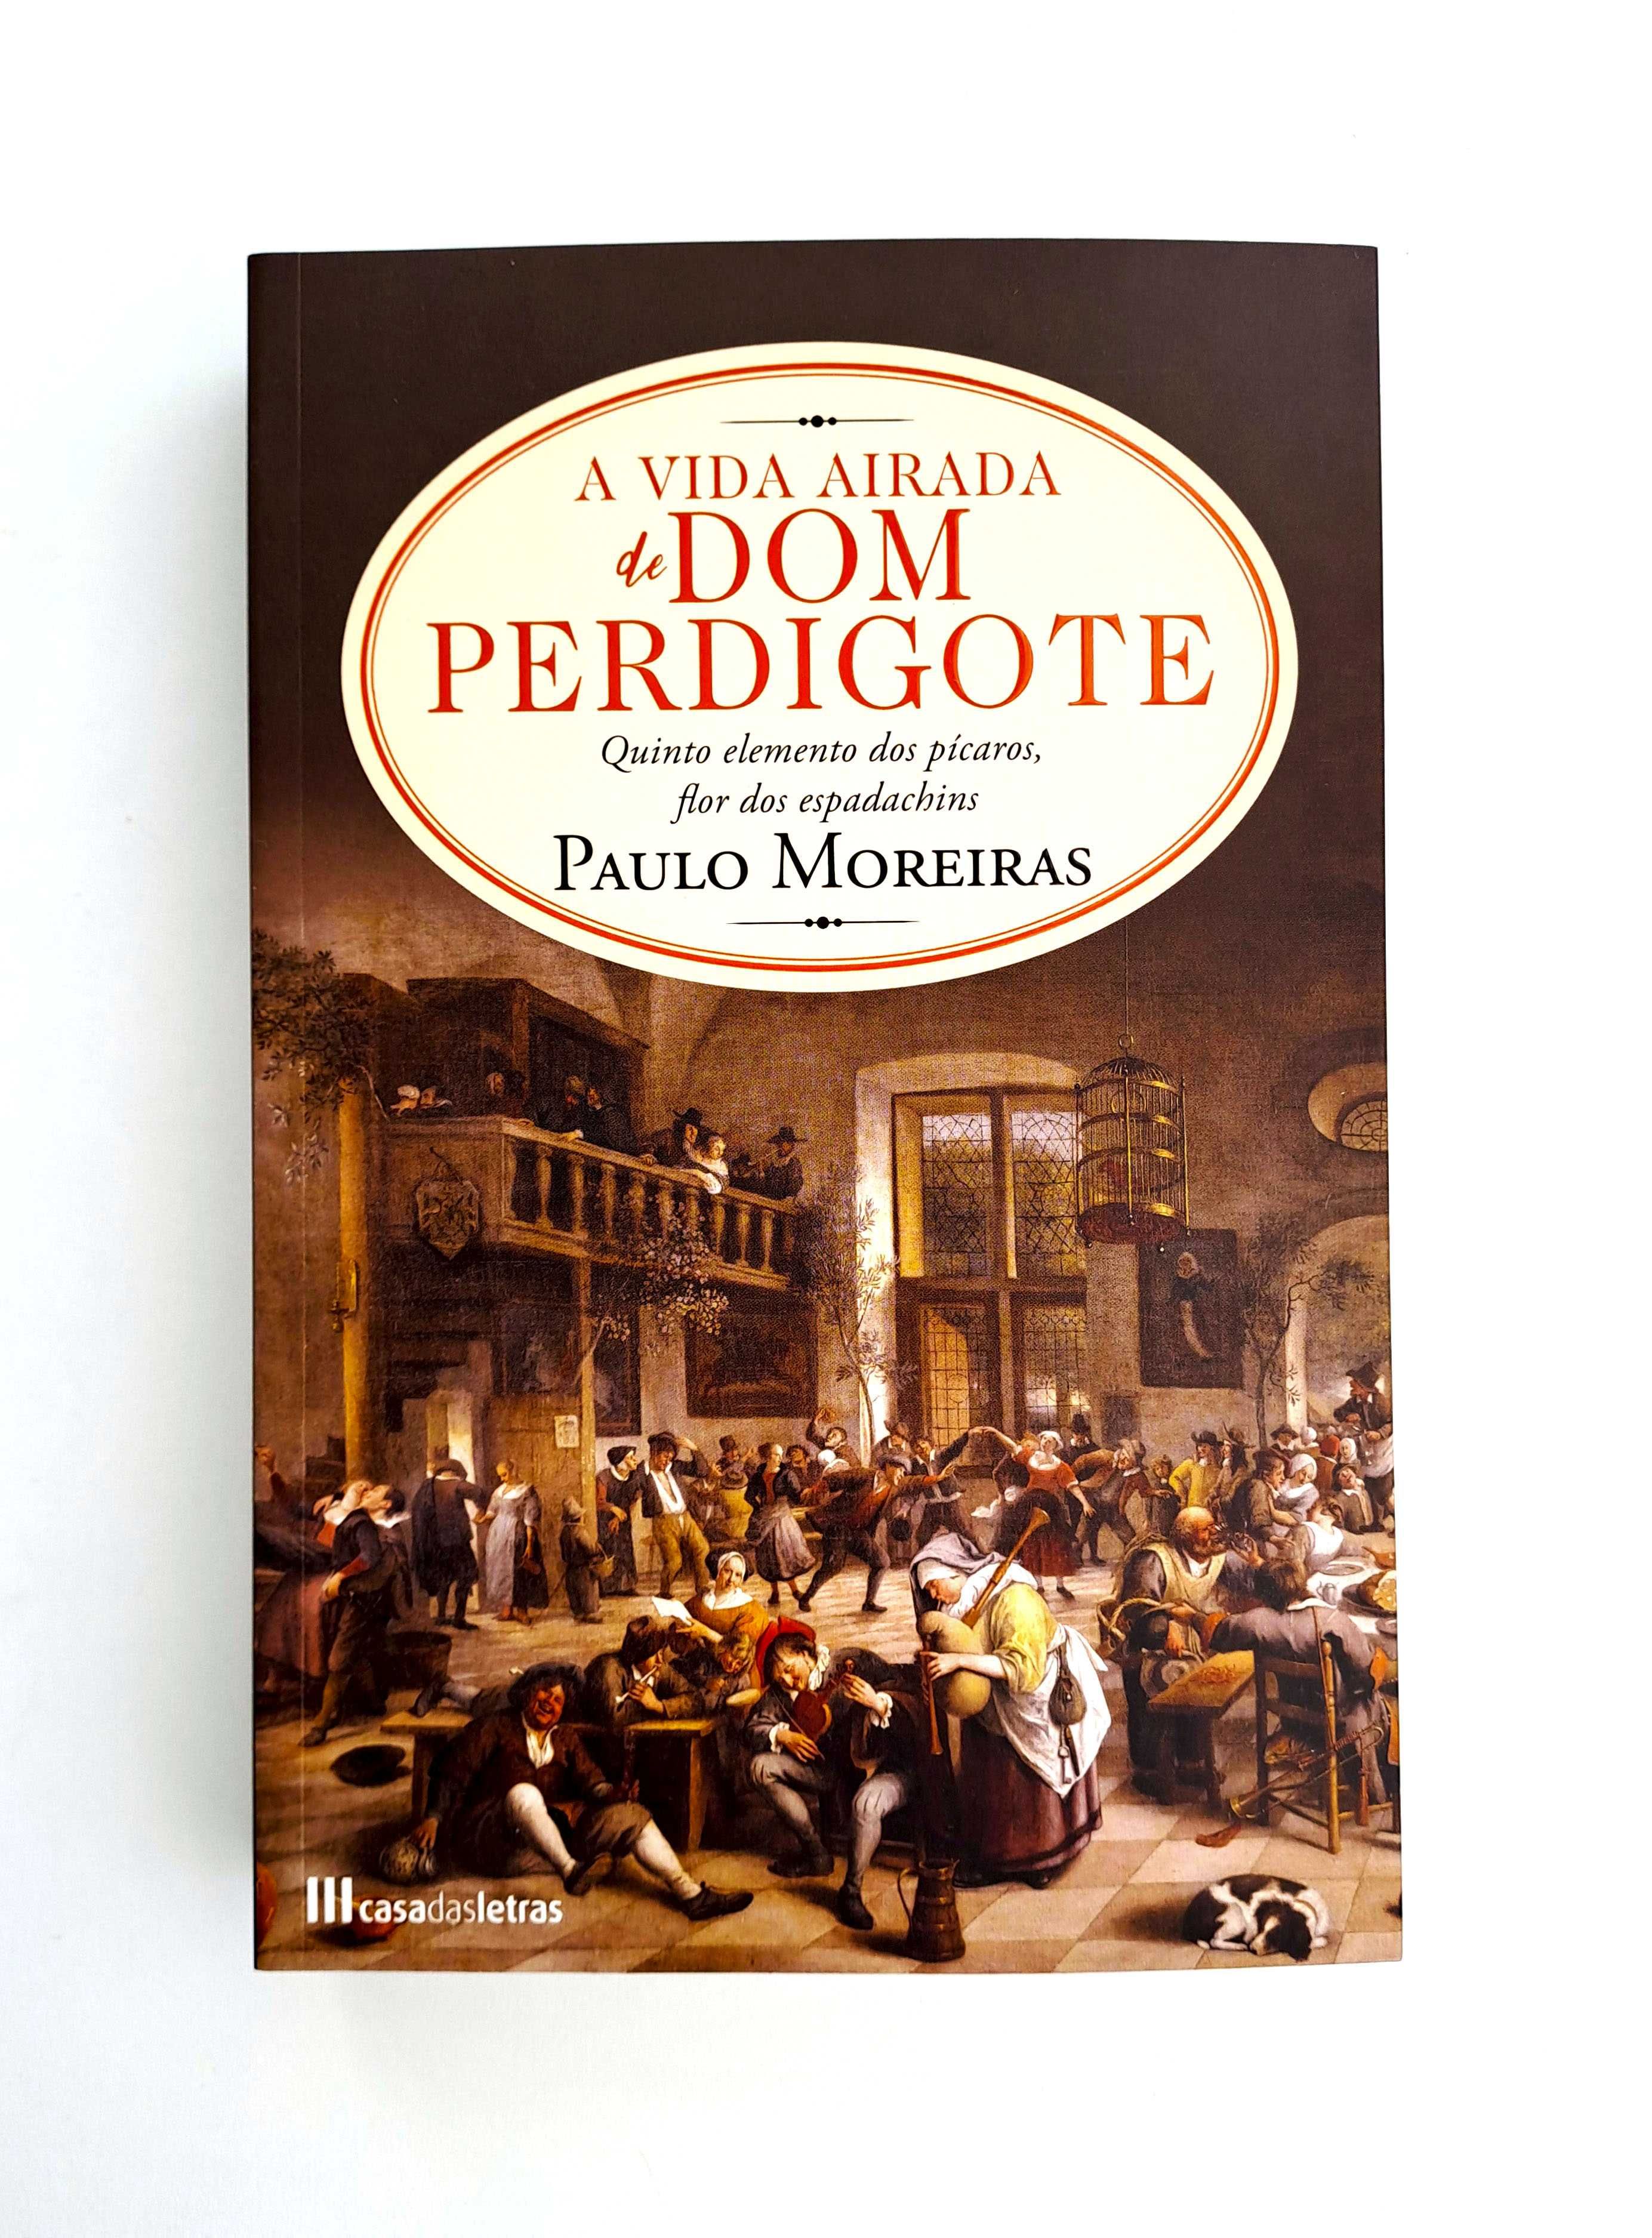 A Vida Airada de Dom Perdigote - Paulo Moreiras